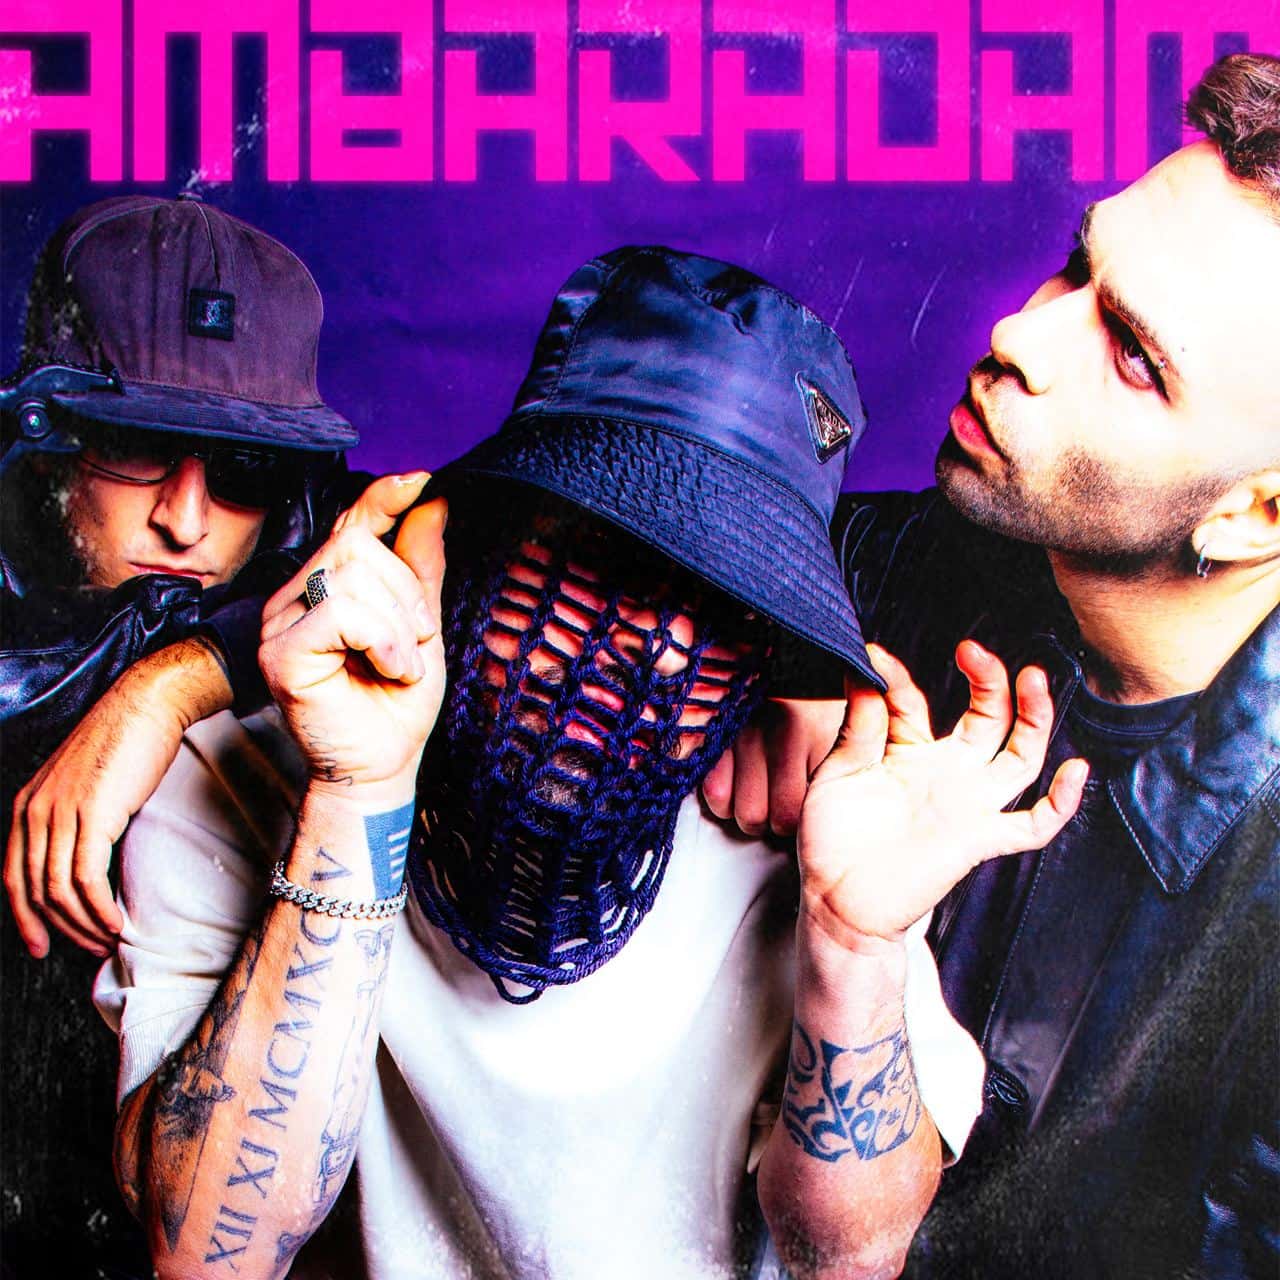 “AMBARADAM” il primo singolo di Bruno Bug, Rimshot e Smooveflex, in uscita in radio e su tutte le piattaforme digitali dal 24 Novembre per Young & Handsome, la nuova divisione di Just Entertainment